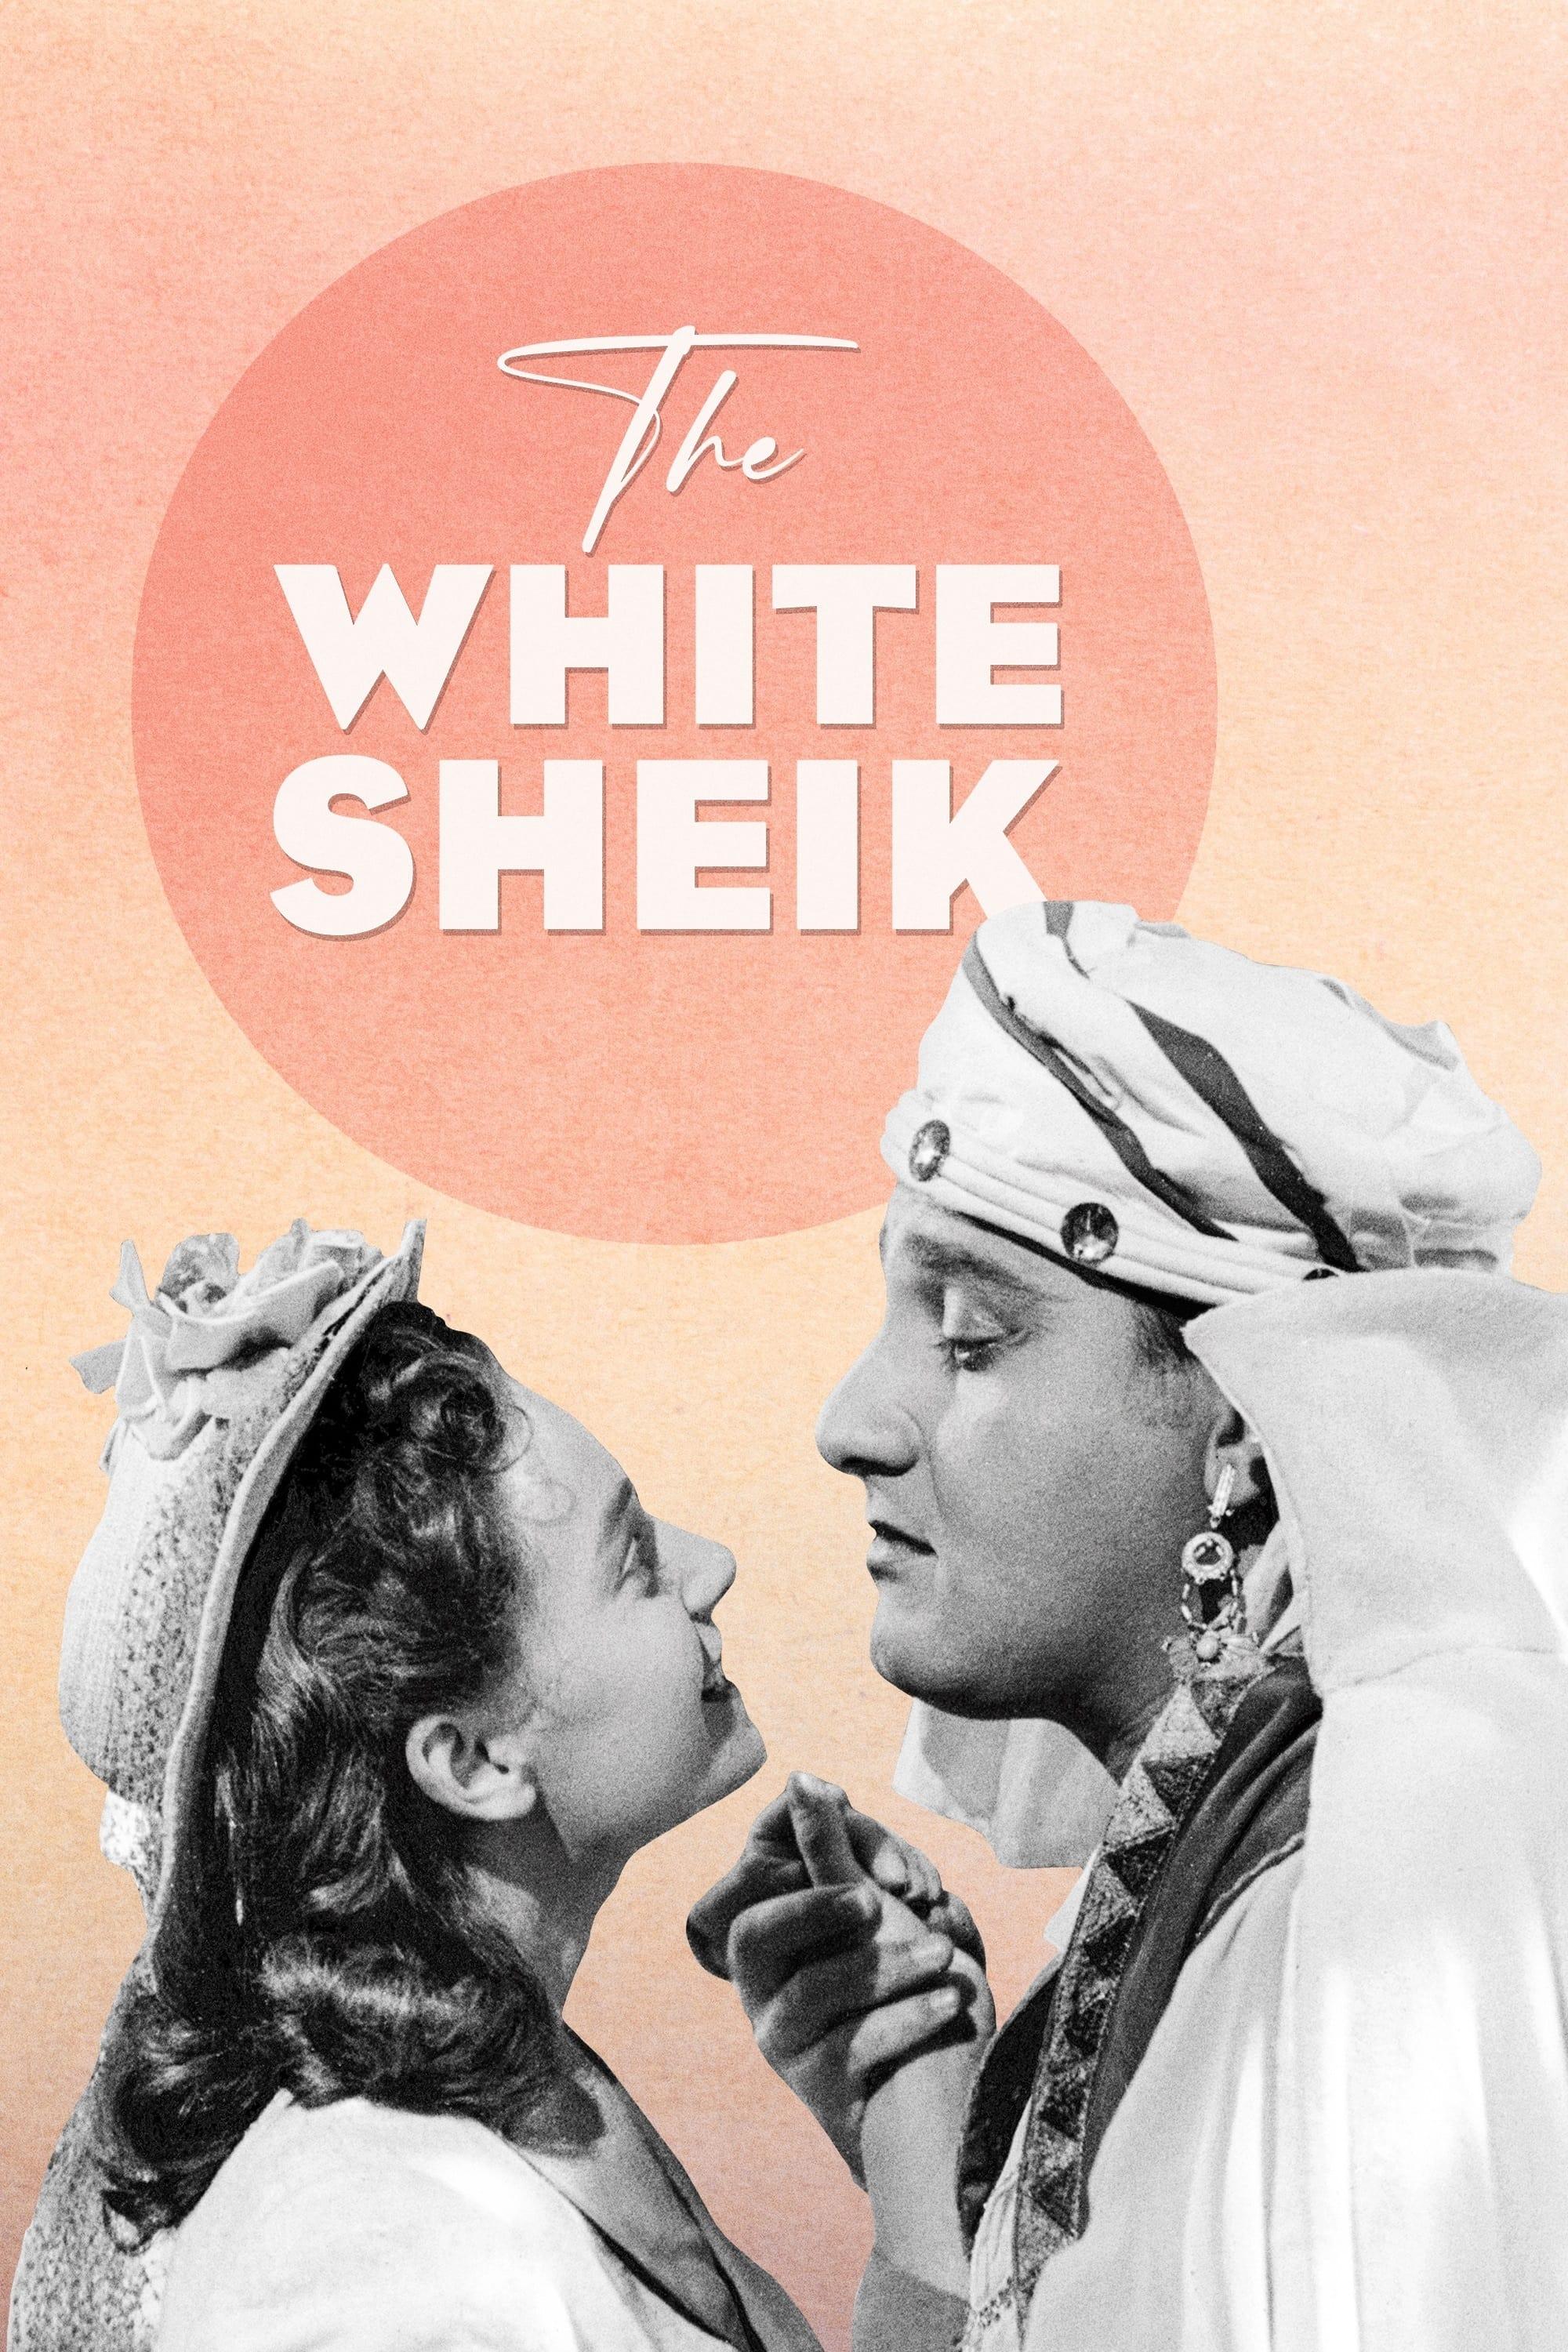 The White Sheik poster